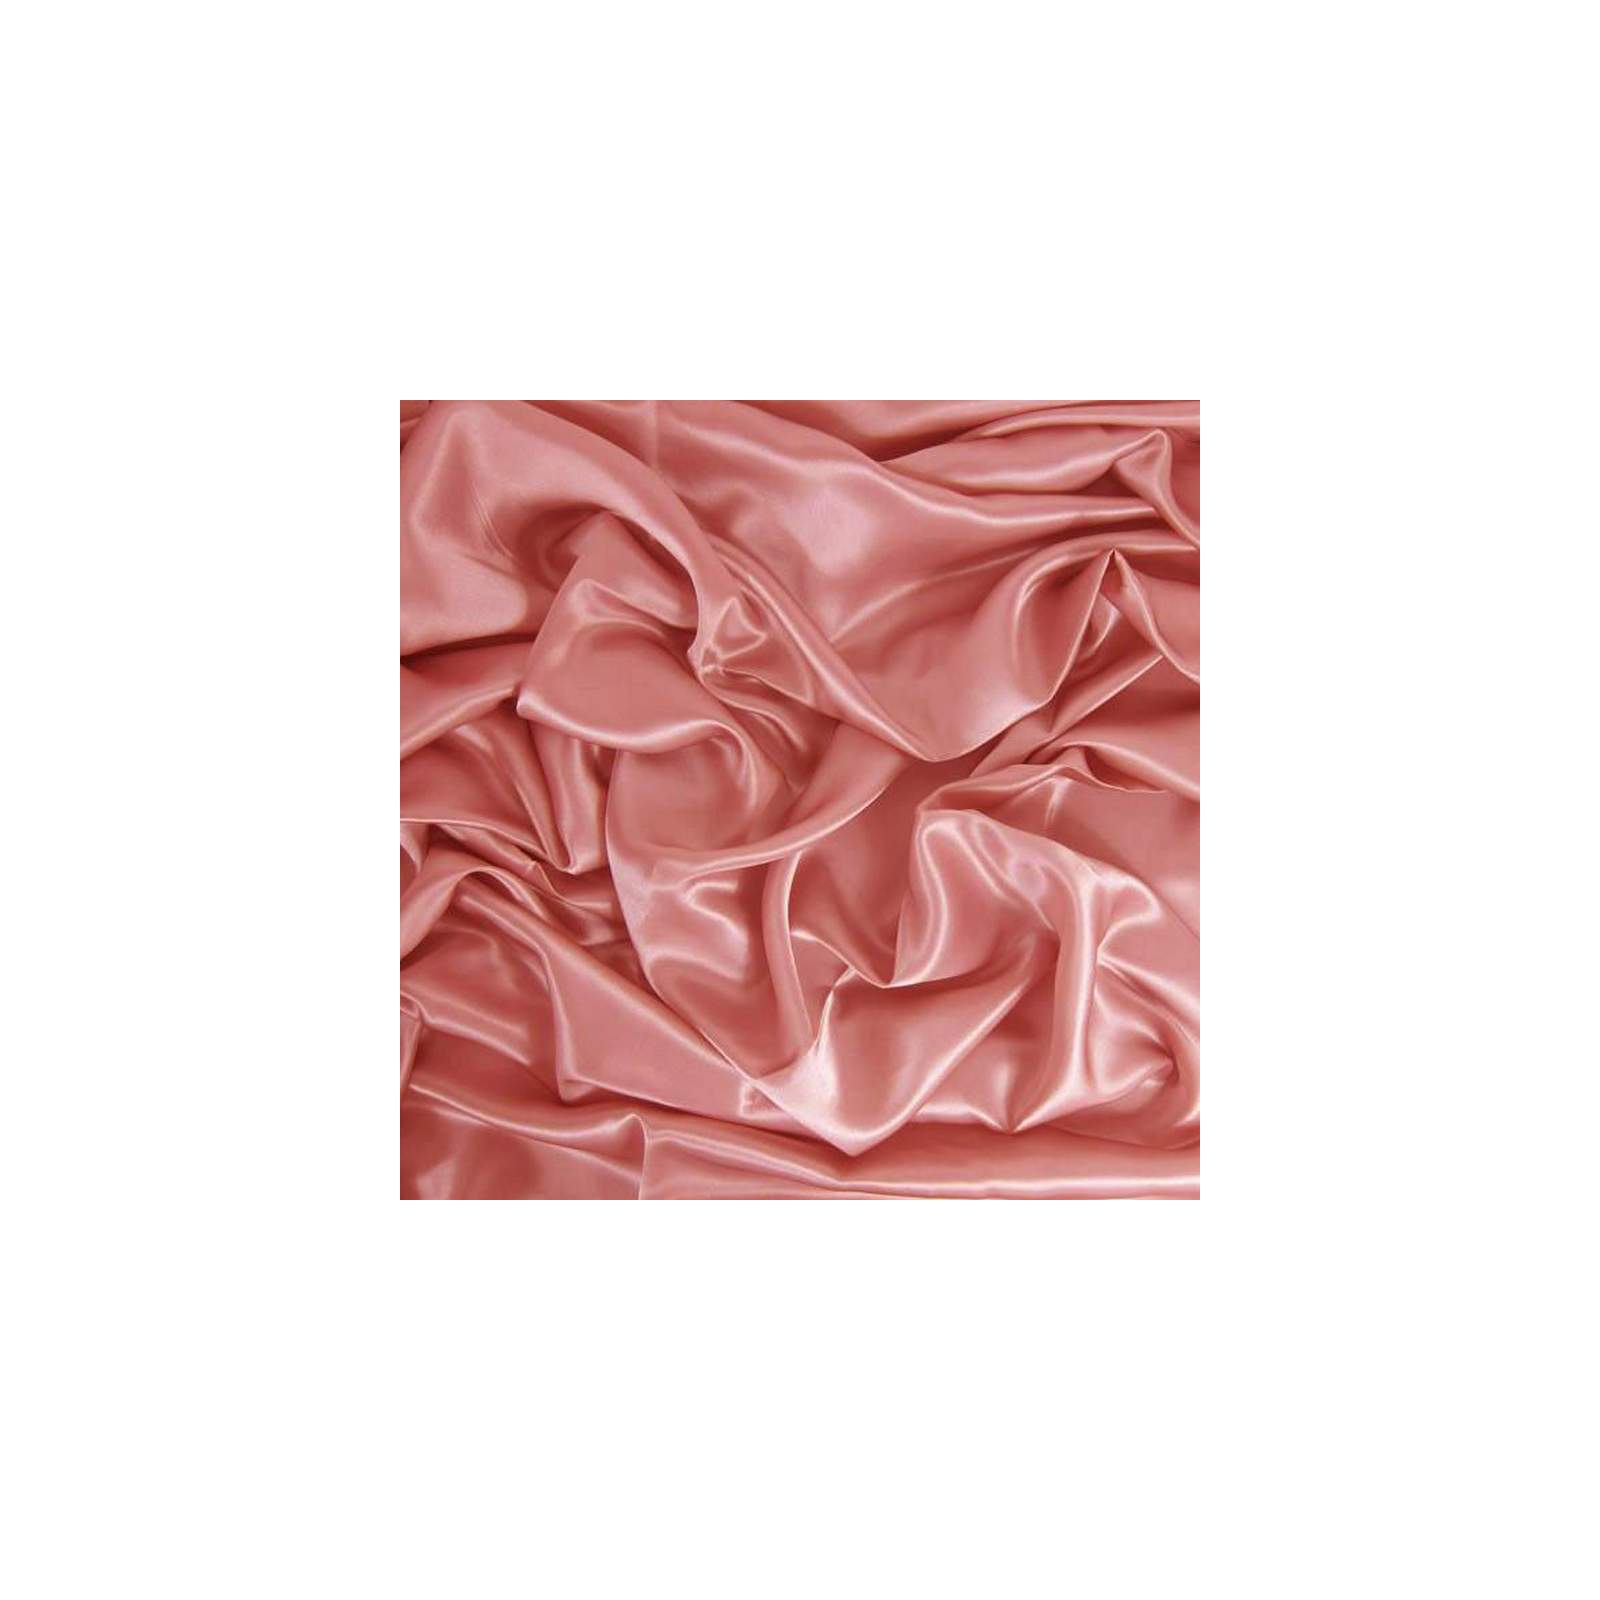 Tissu satin de soie rose poudré uni fait en Italie